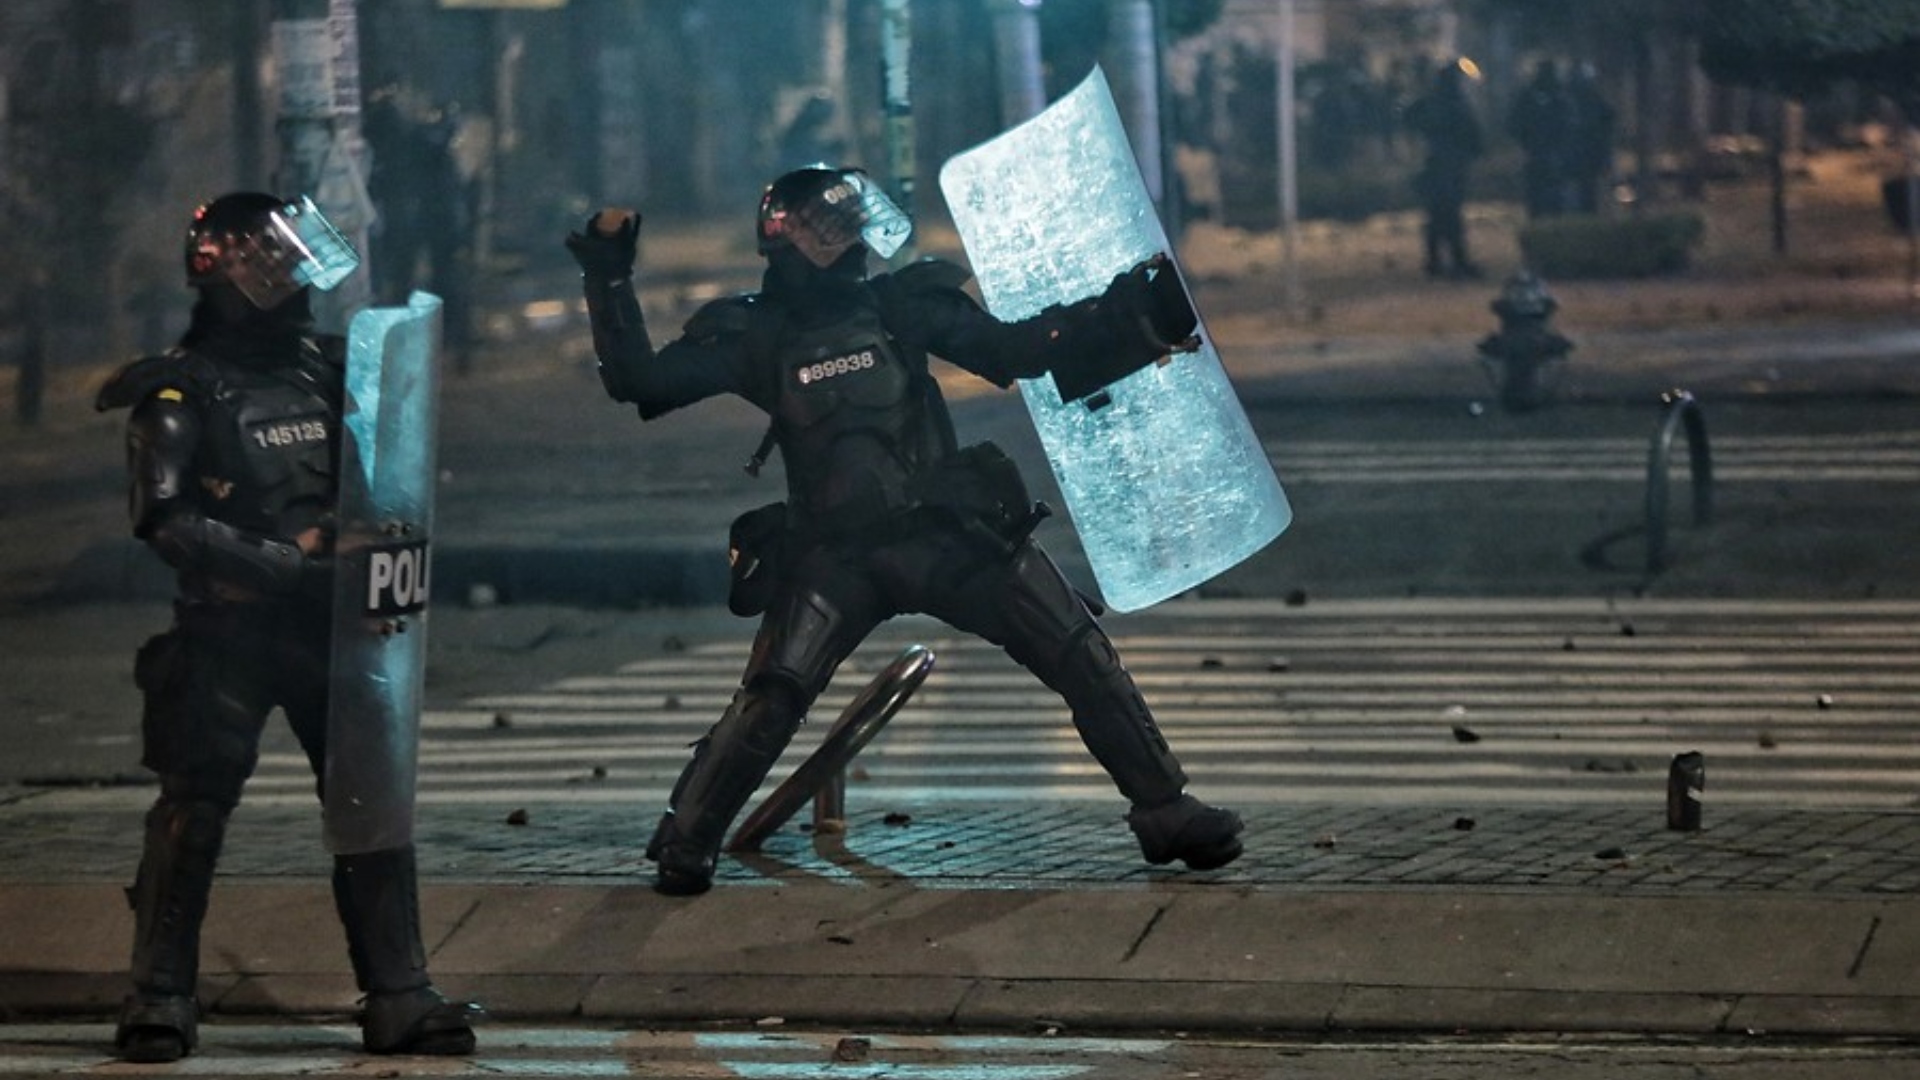 Referencia. Bogotá, 30 de Abril de 2021. Fuertes enfrentamientos en la localidad de Suba. (Colprensa - Álvaro Tavera)